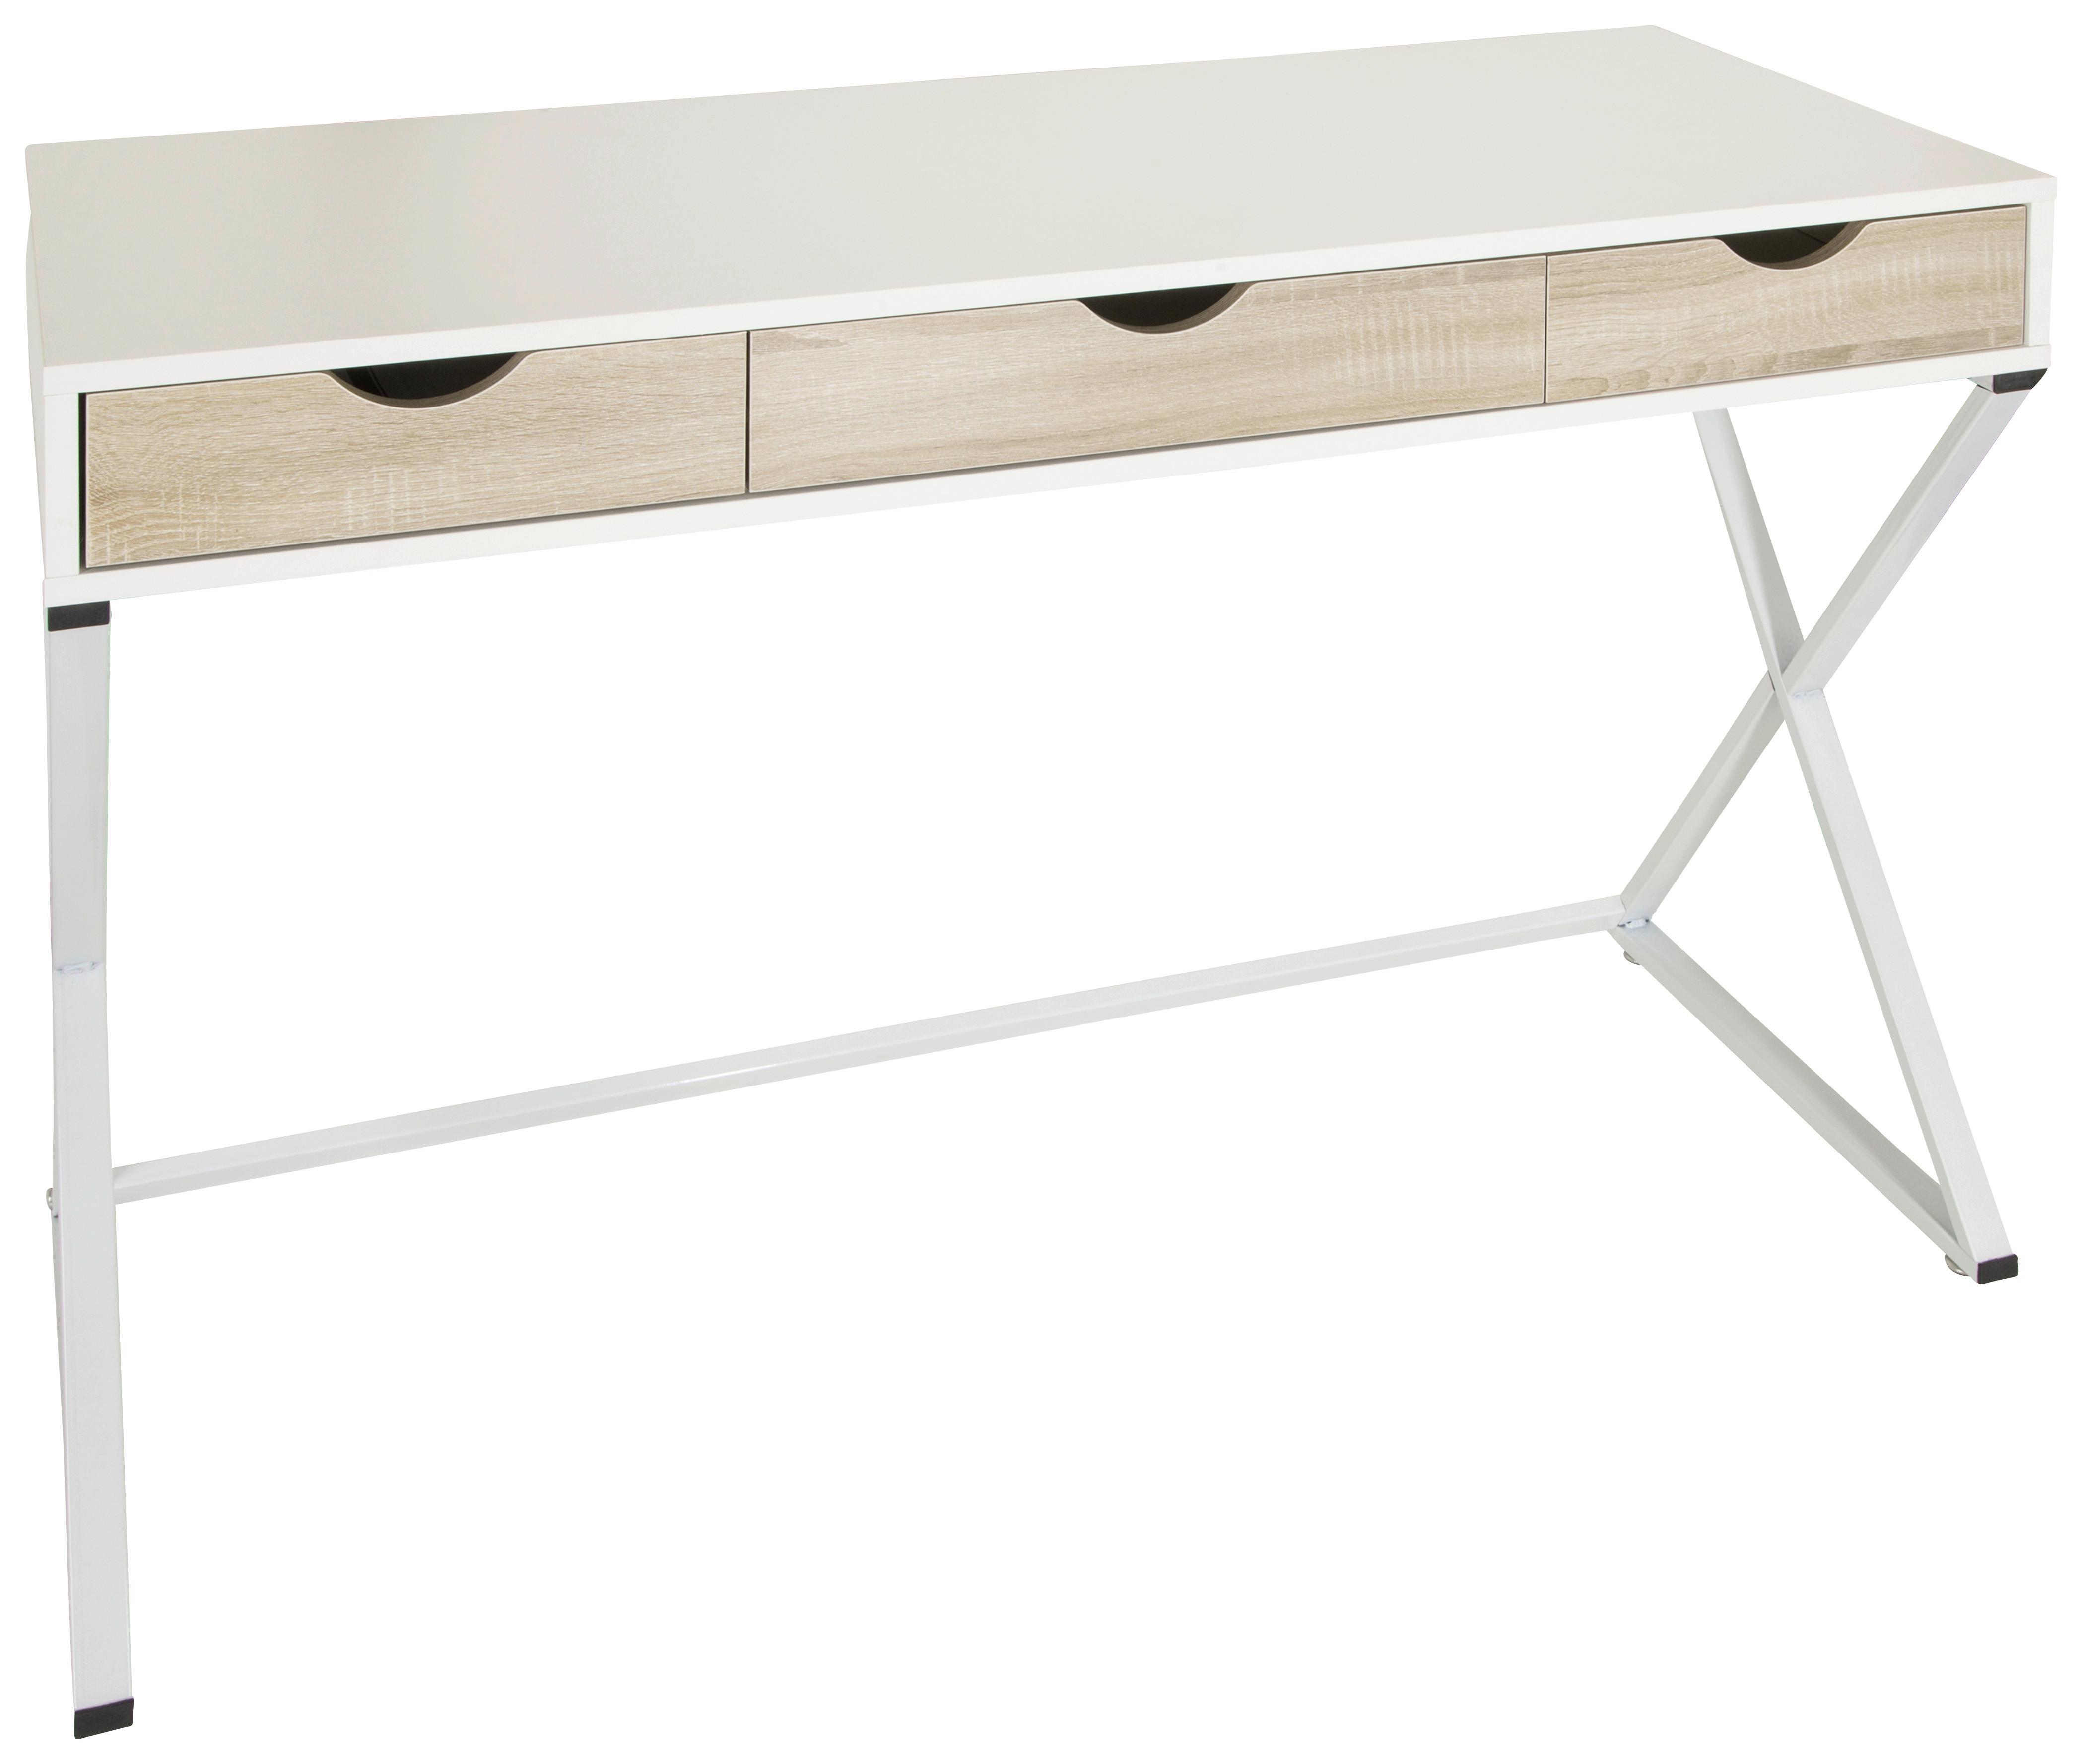 Schreibtisch Easy Flow IIi Weiß/Eichefarben - Eichefarben/Weiß, MODERN, Holzwerkstoff/Metall (120/50/79cm) - MID.YOU